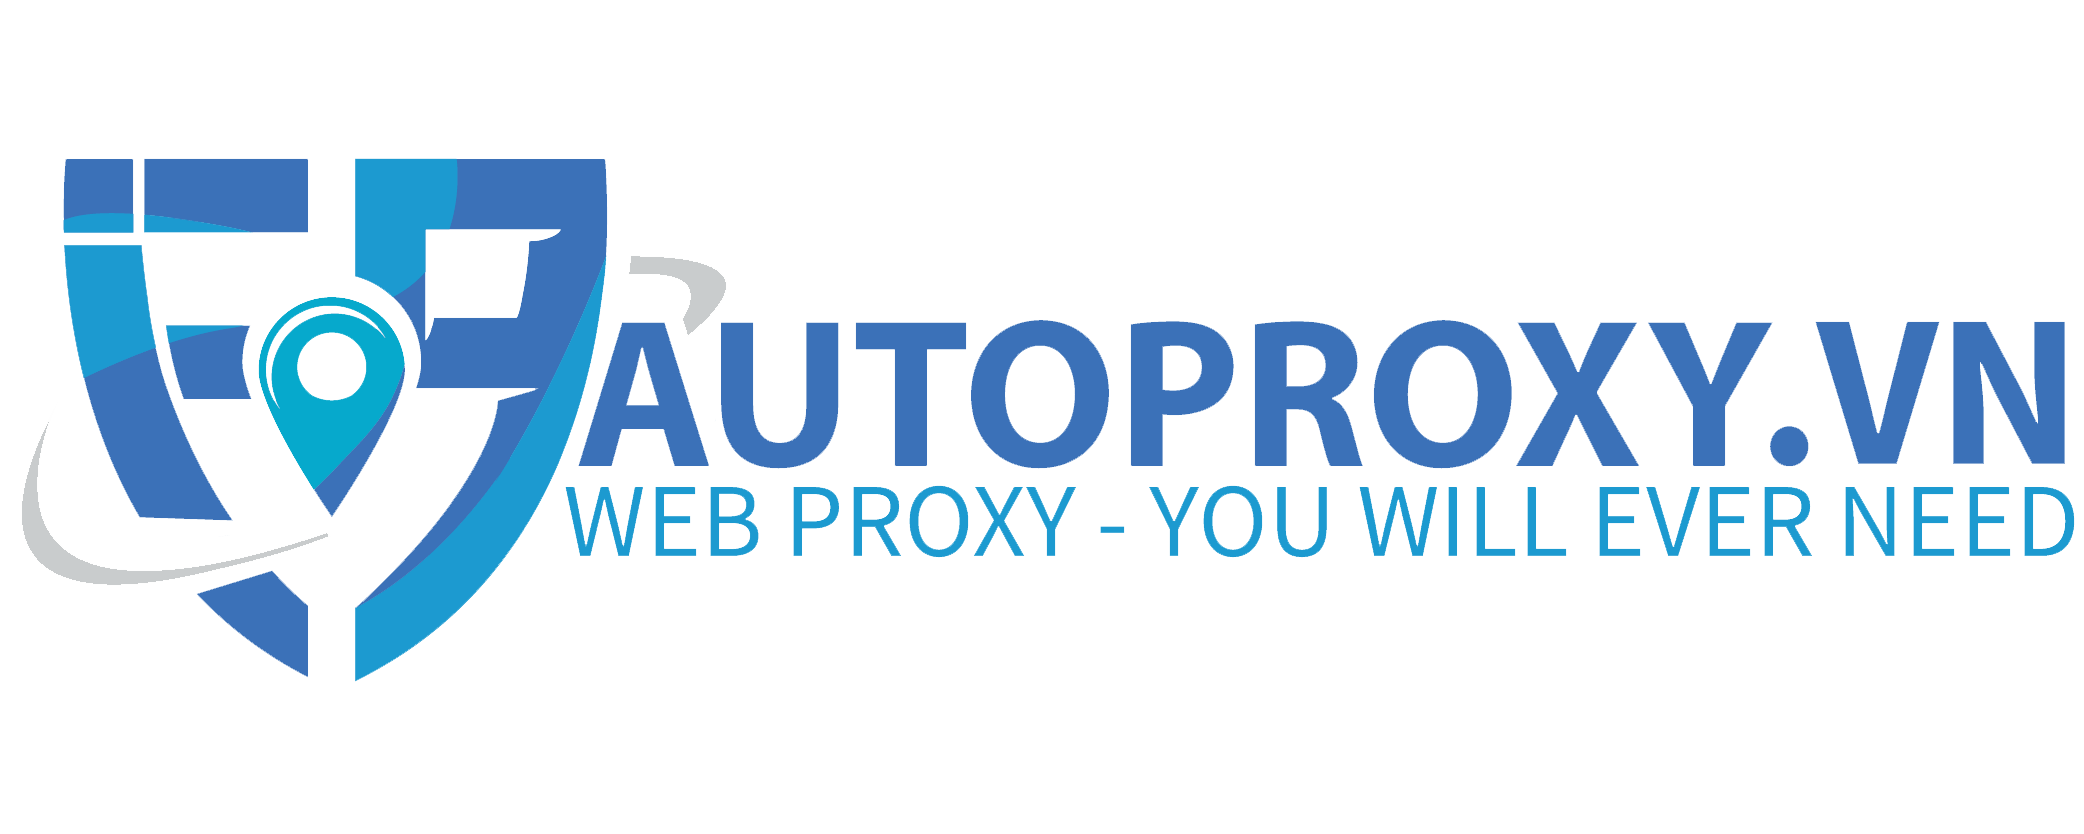 autoproxy.vn Mua Proxy giá rẻ tại Việt Nam